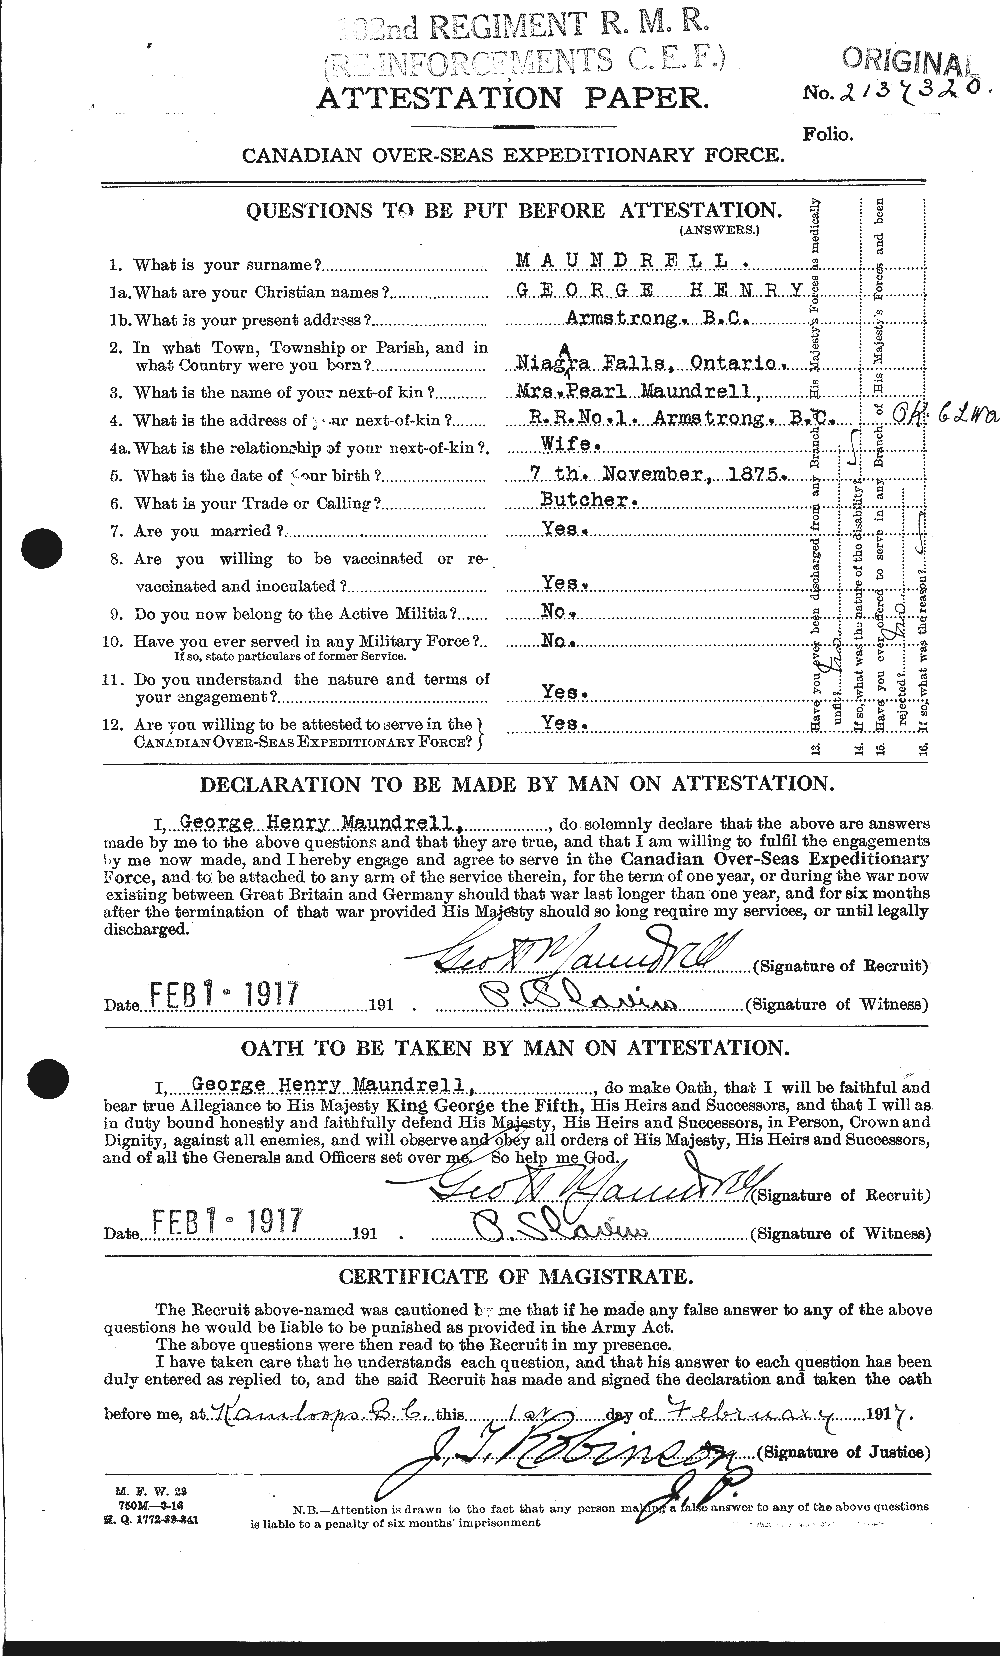 Dossiers du Personnel de la Première Guerre mondiale - CEC 487818a